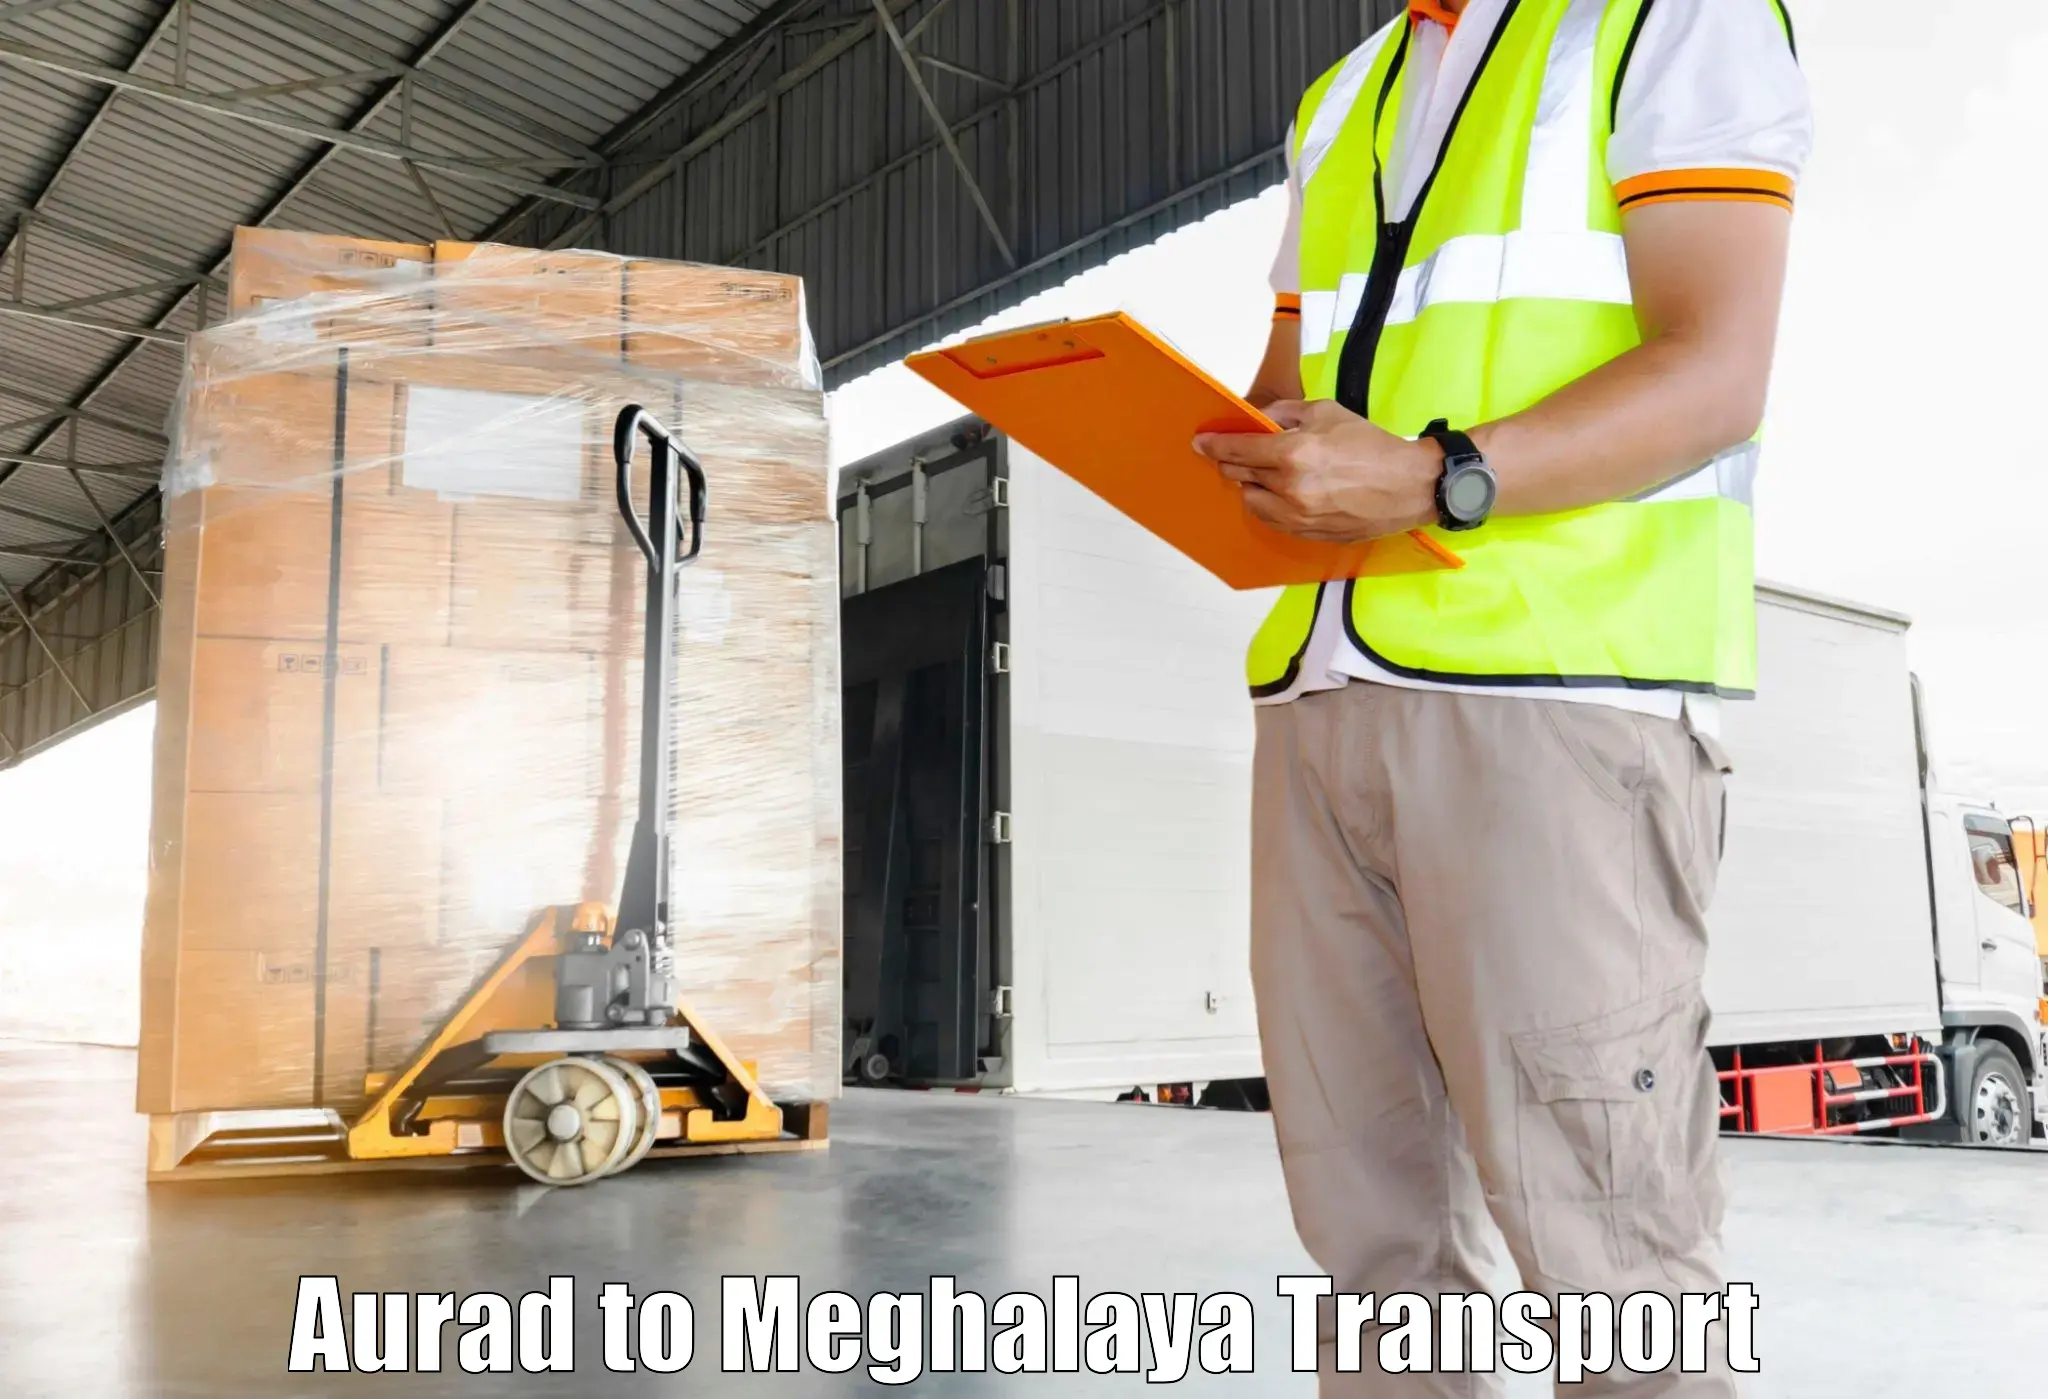 Cargo transportation services Aurad to Dkhiah West